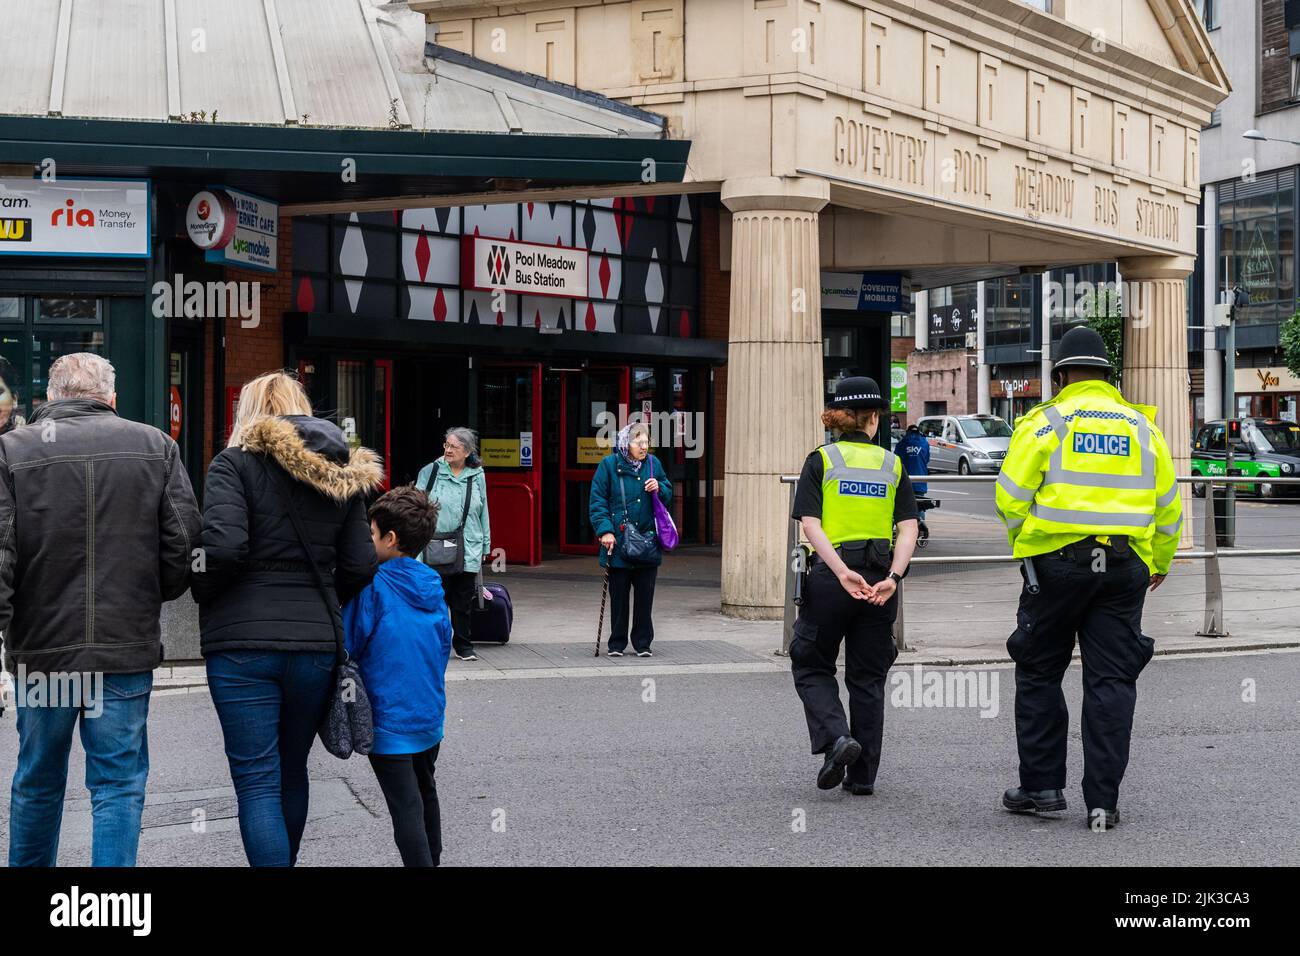 Deux policiers patrouillent à la gare routière de Pool Meadow, Coventry, West Midlands, Royaume-Uni. Banque D'Images